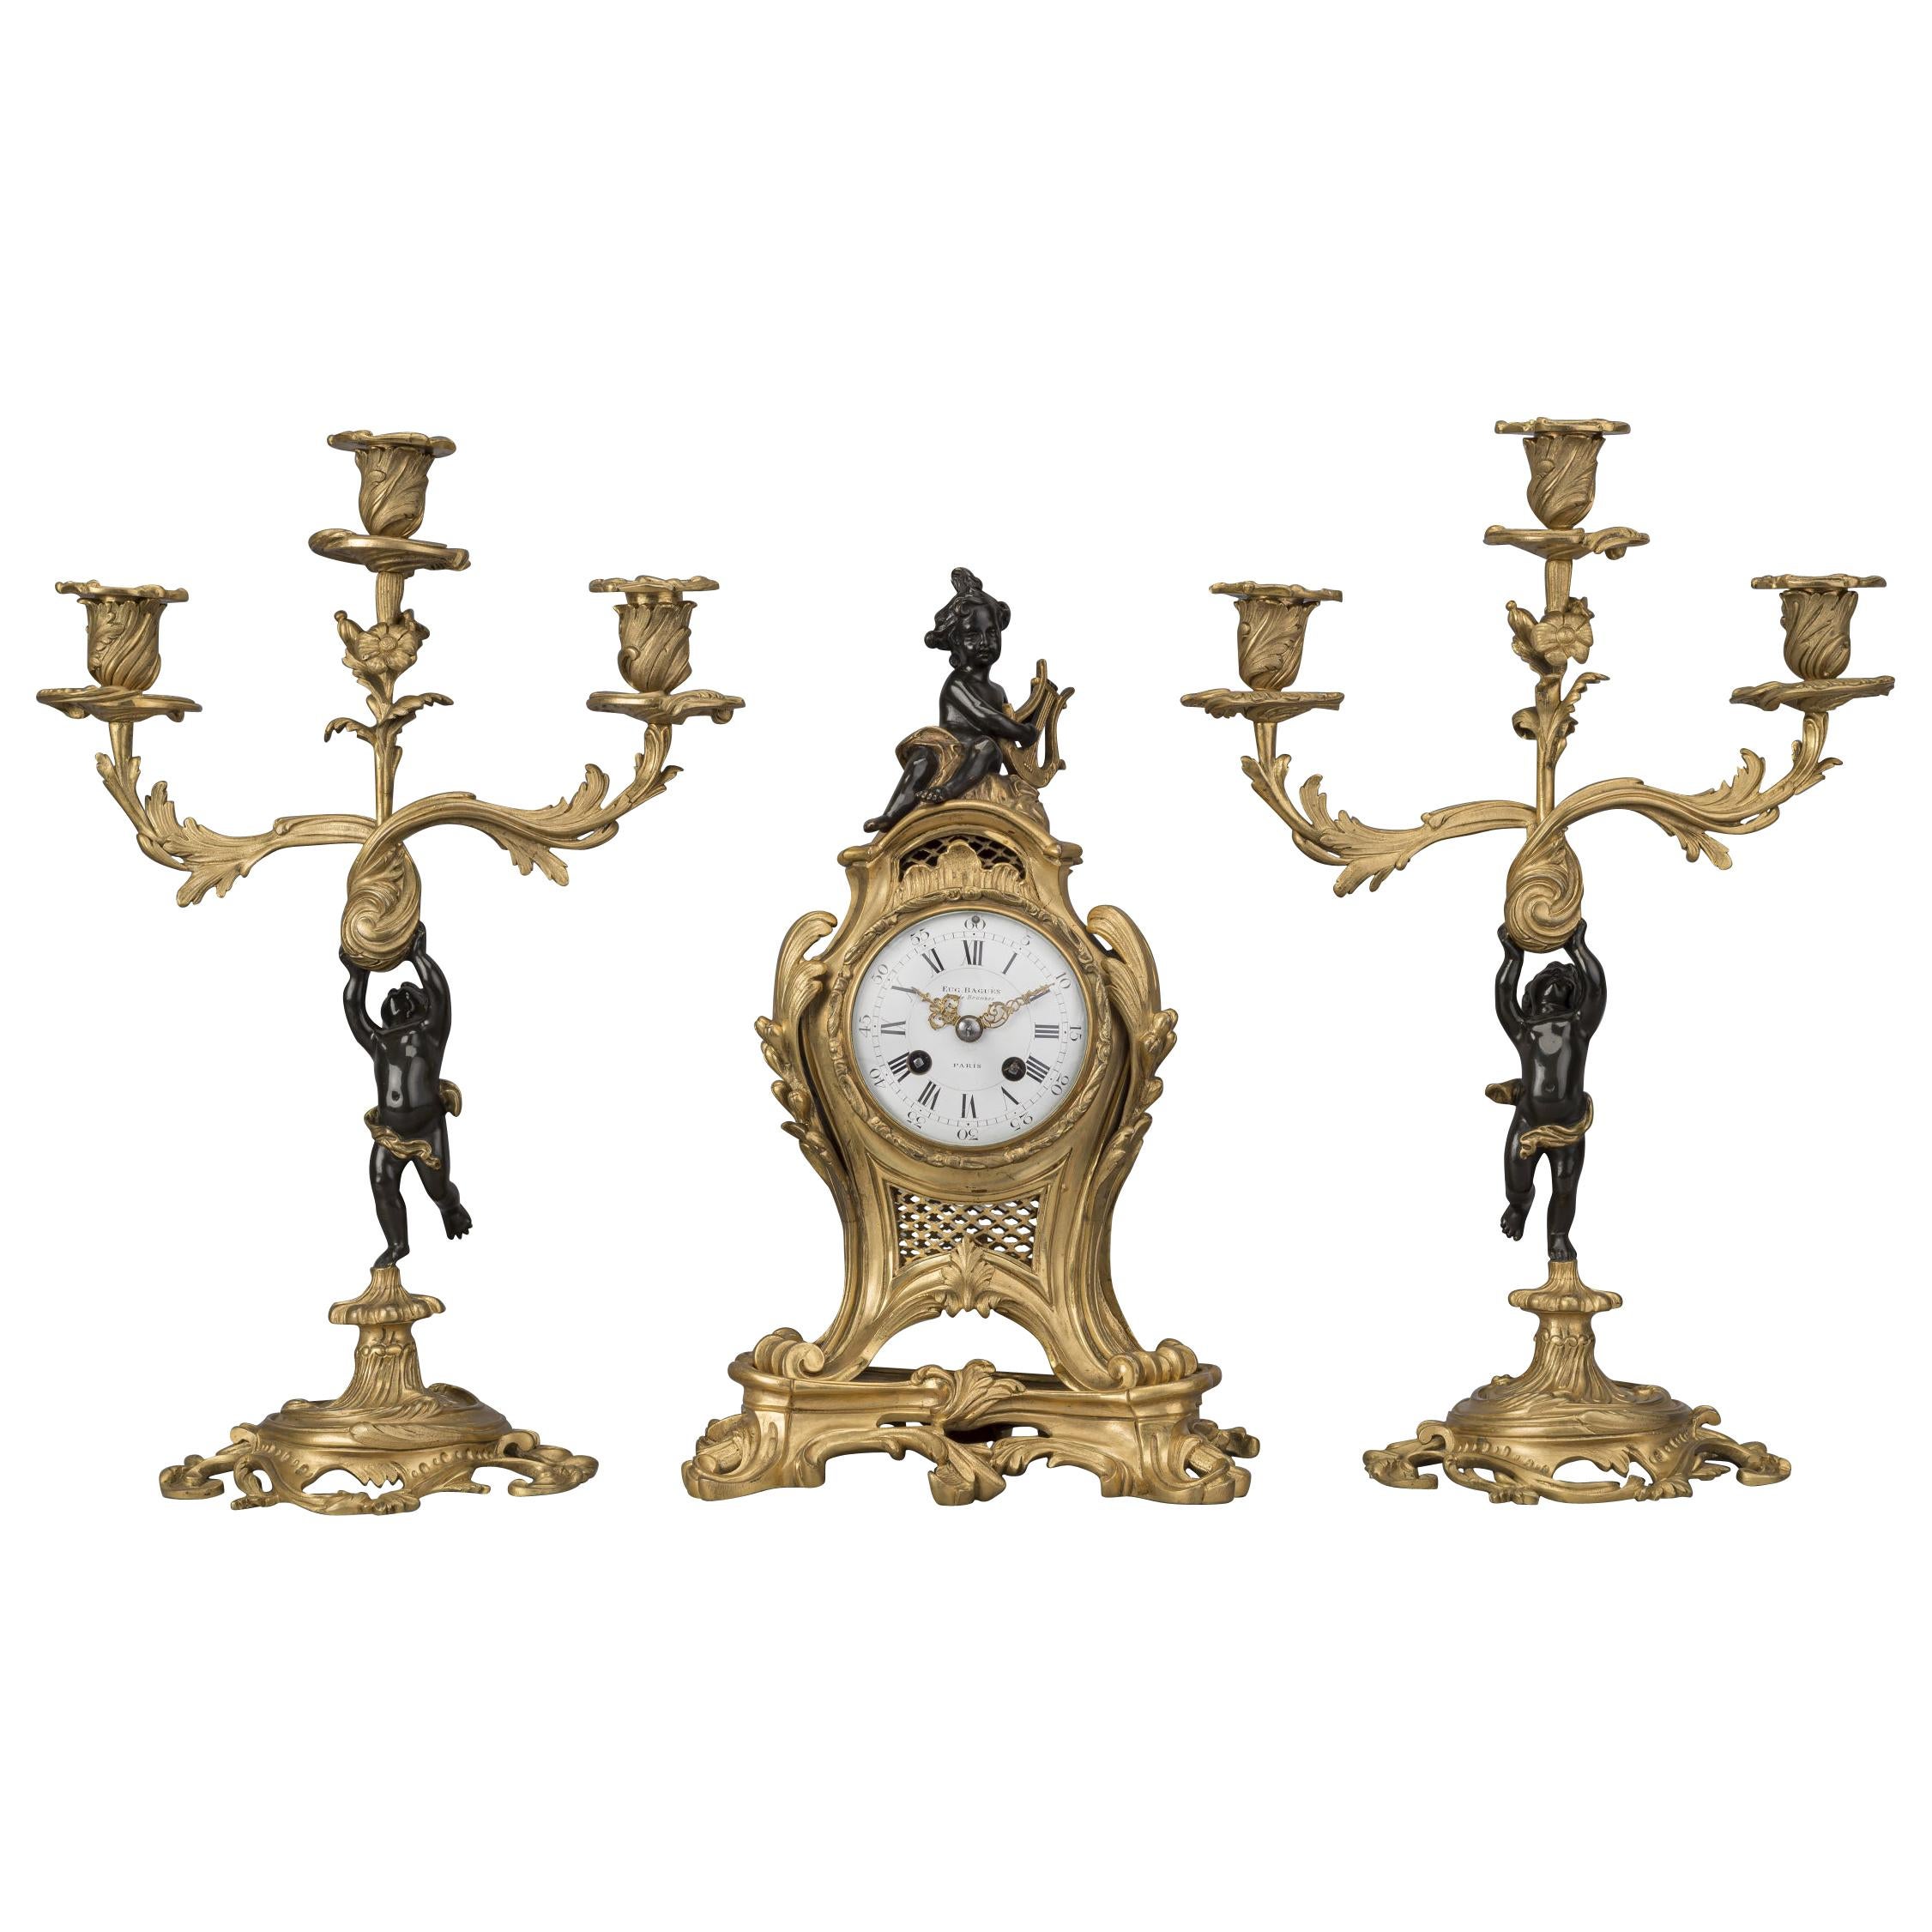 Garniture d'horloge figurative de style Louis XV en bronze de la Maison Baguès:: France:: datant d'environ 1870